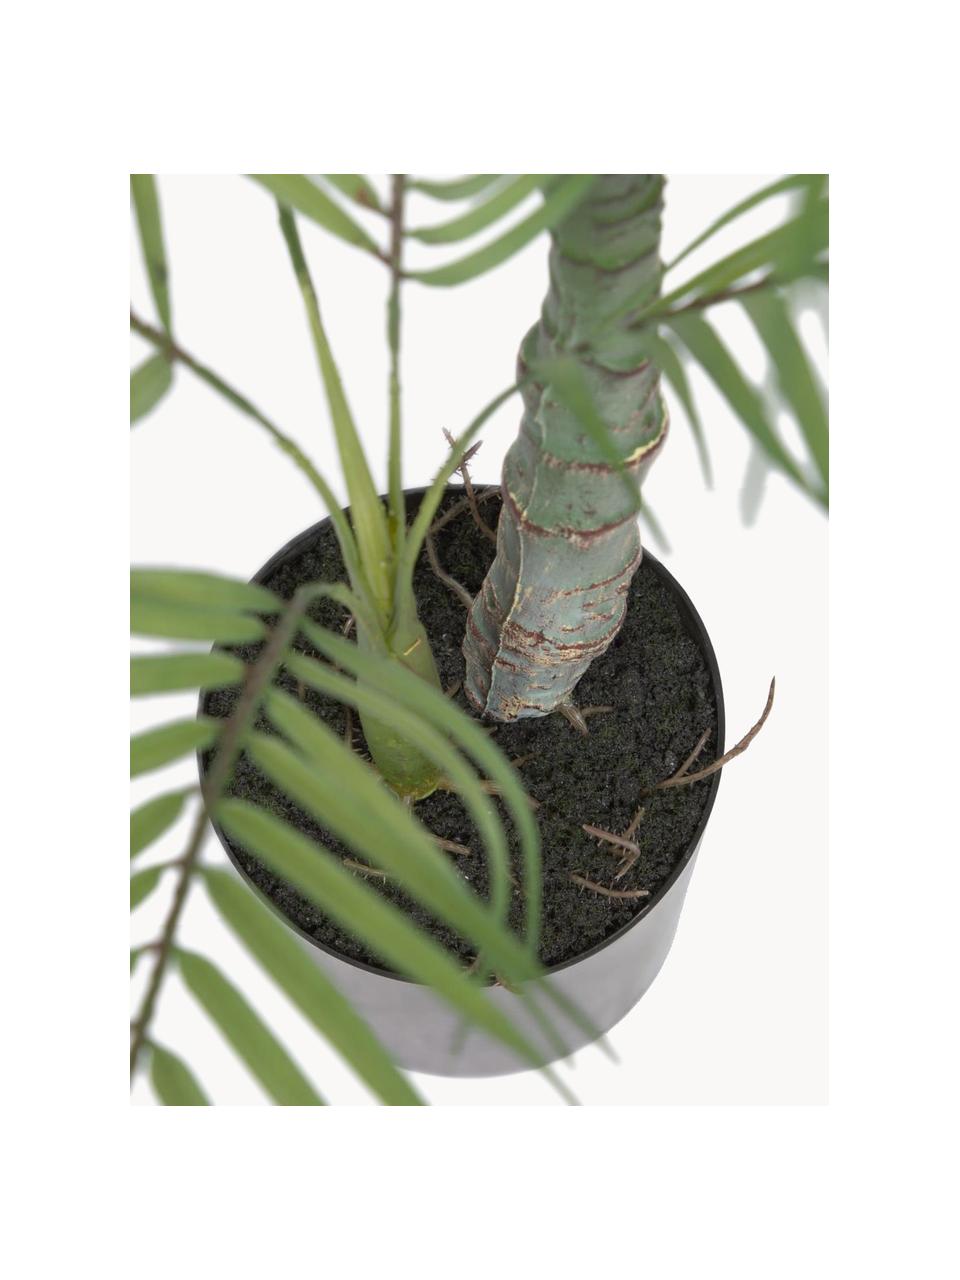 Palma artificiale in portavaso Palme, Plastica, Verde, nero, Lung. 84 cm